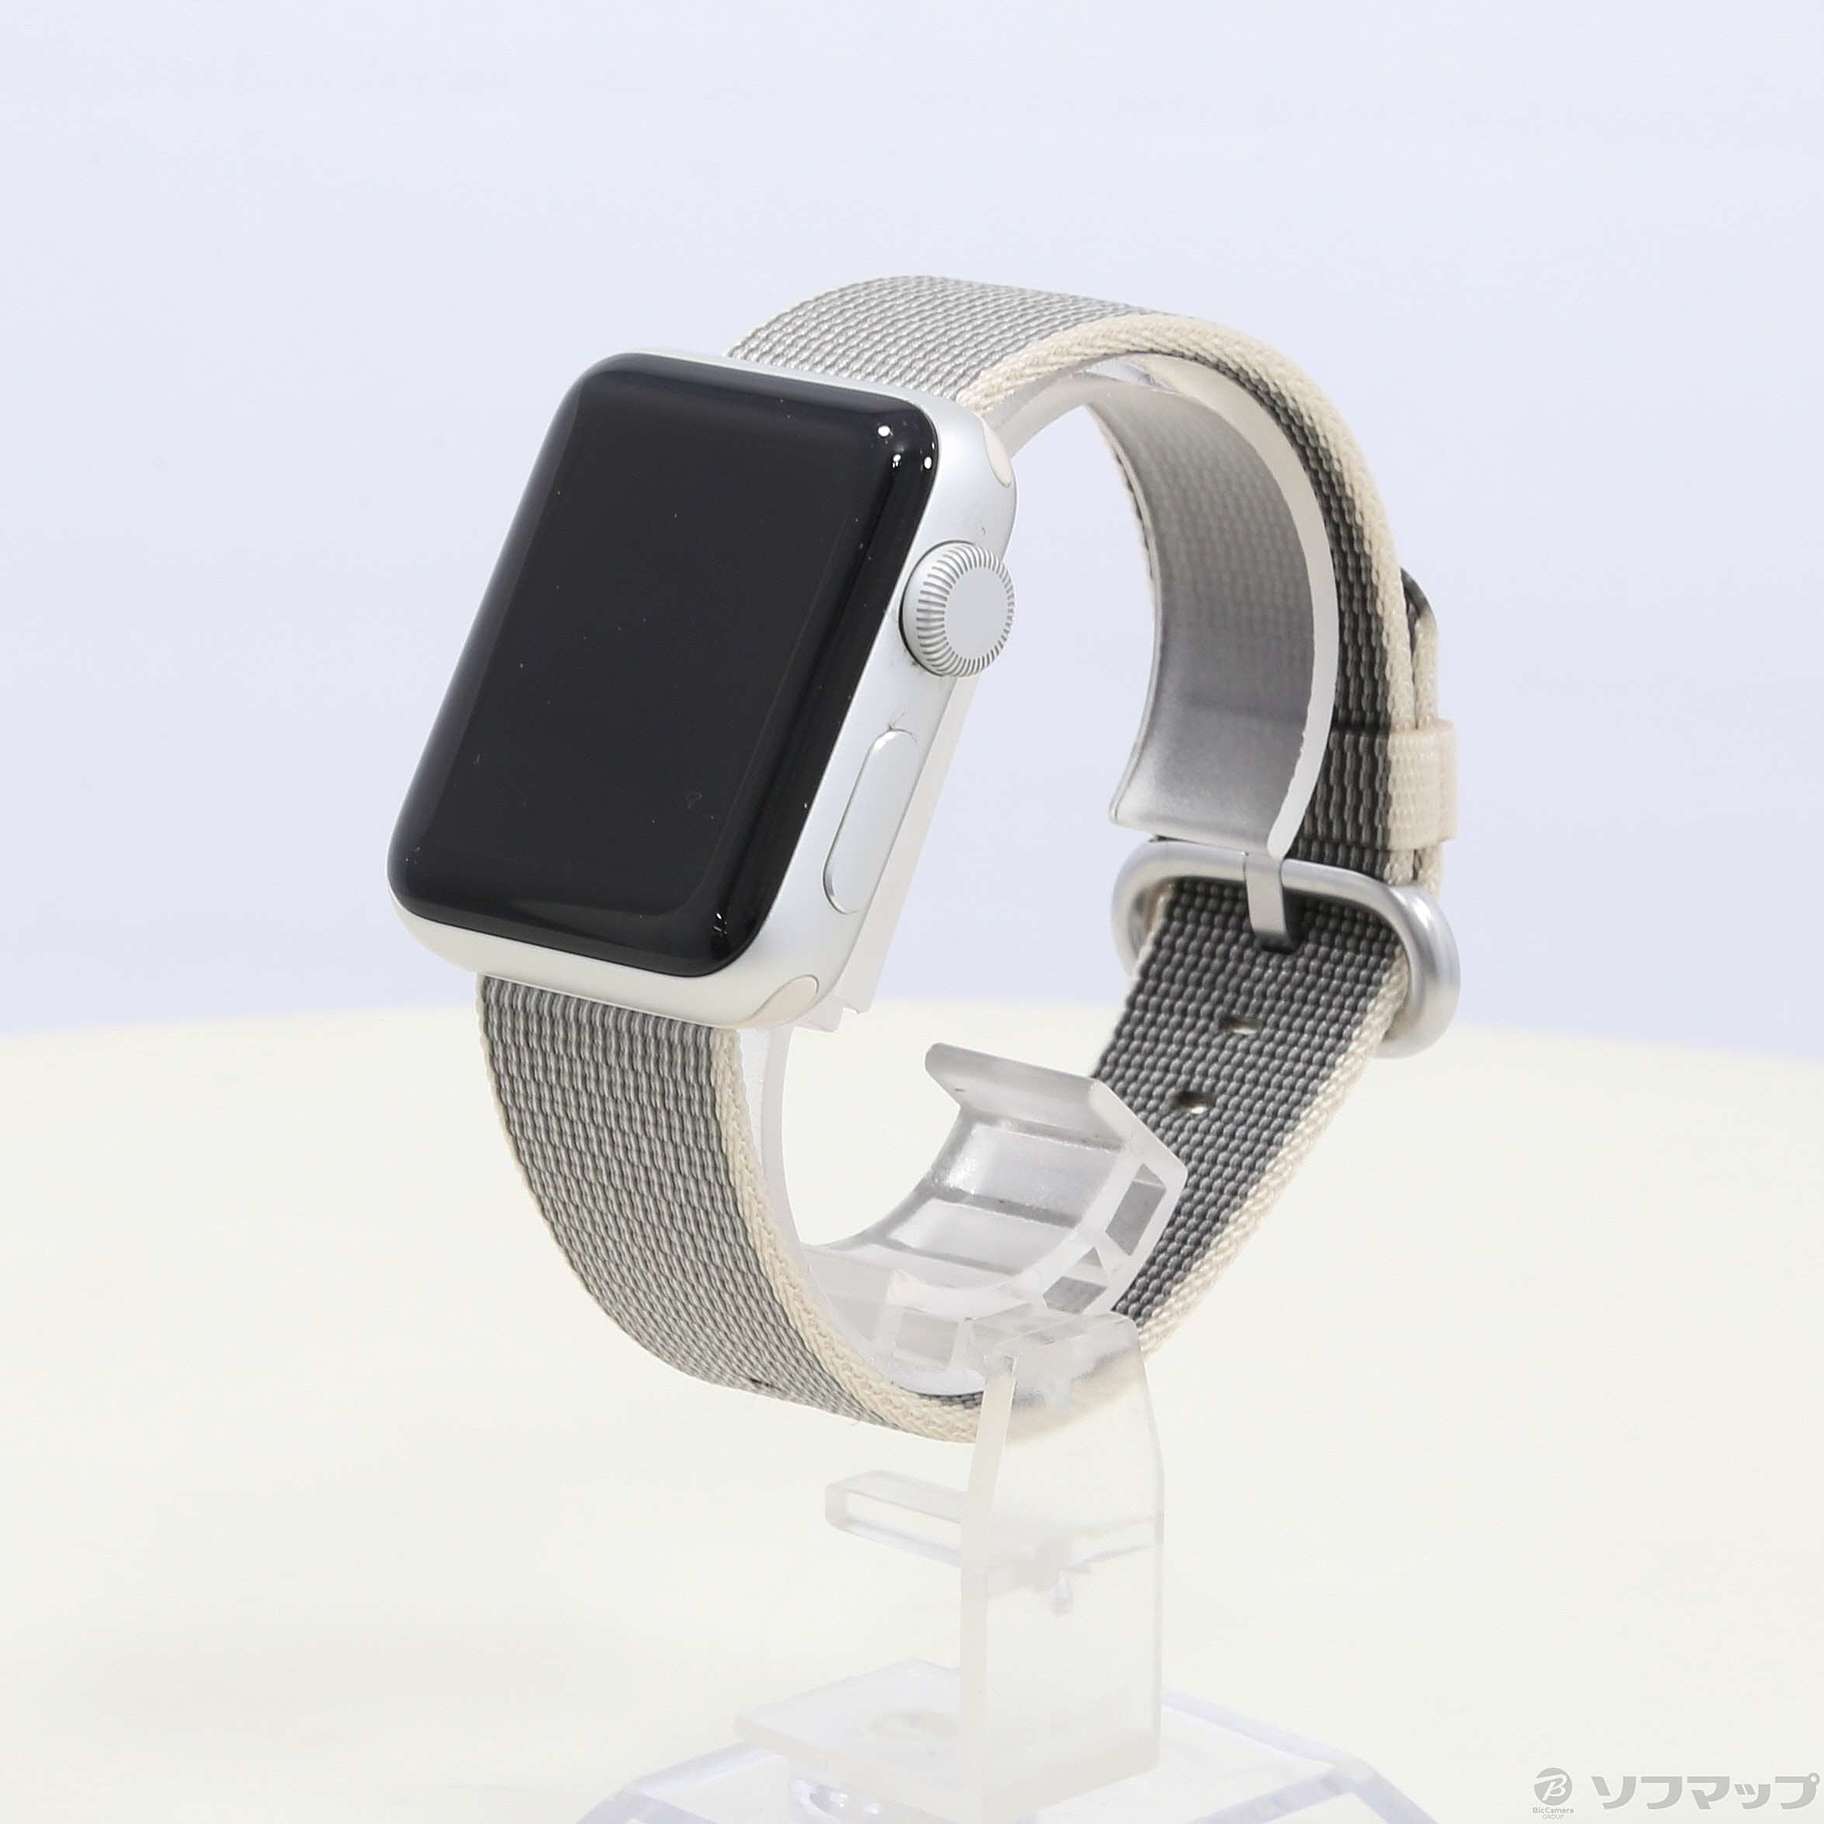 中古】セール対象品 Apple Watch Series 2 38mm シルバーアルミニウム 